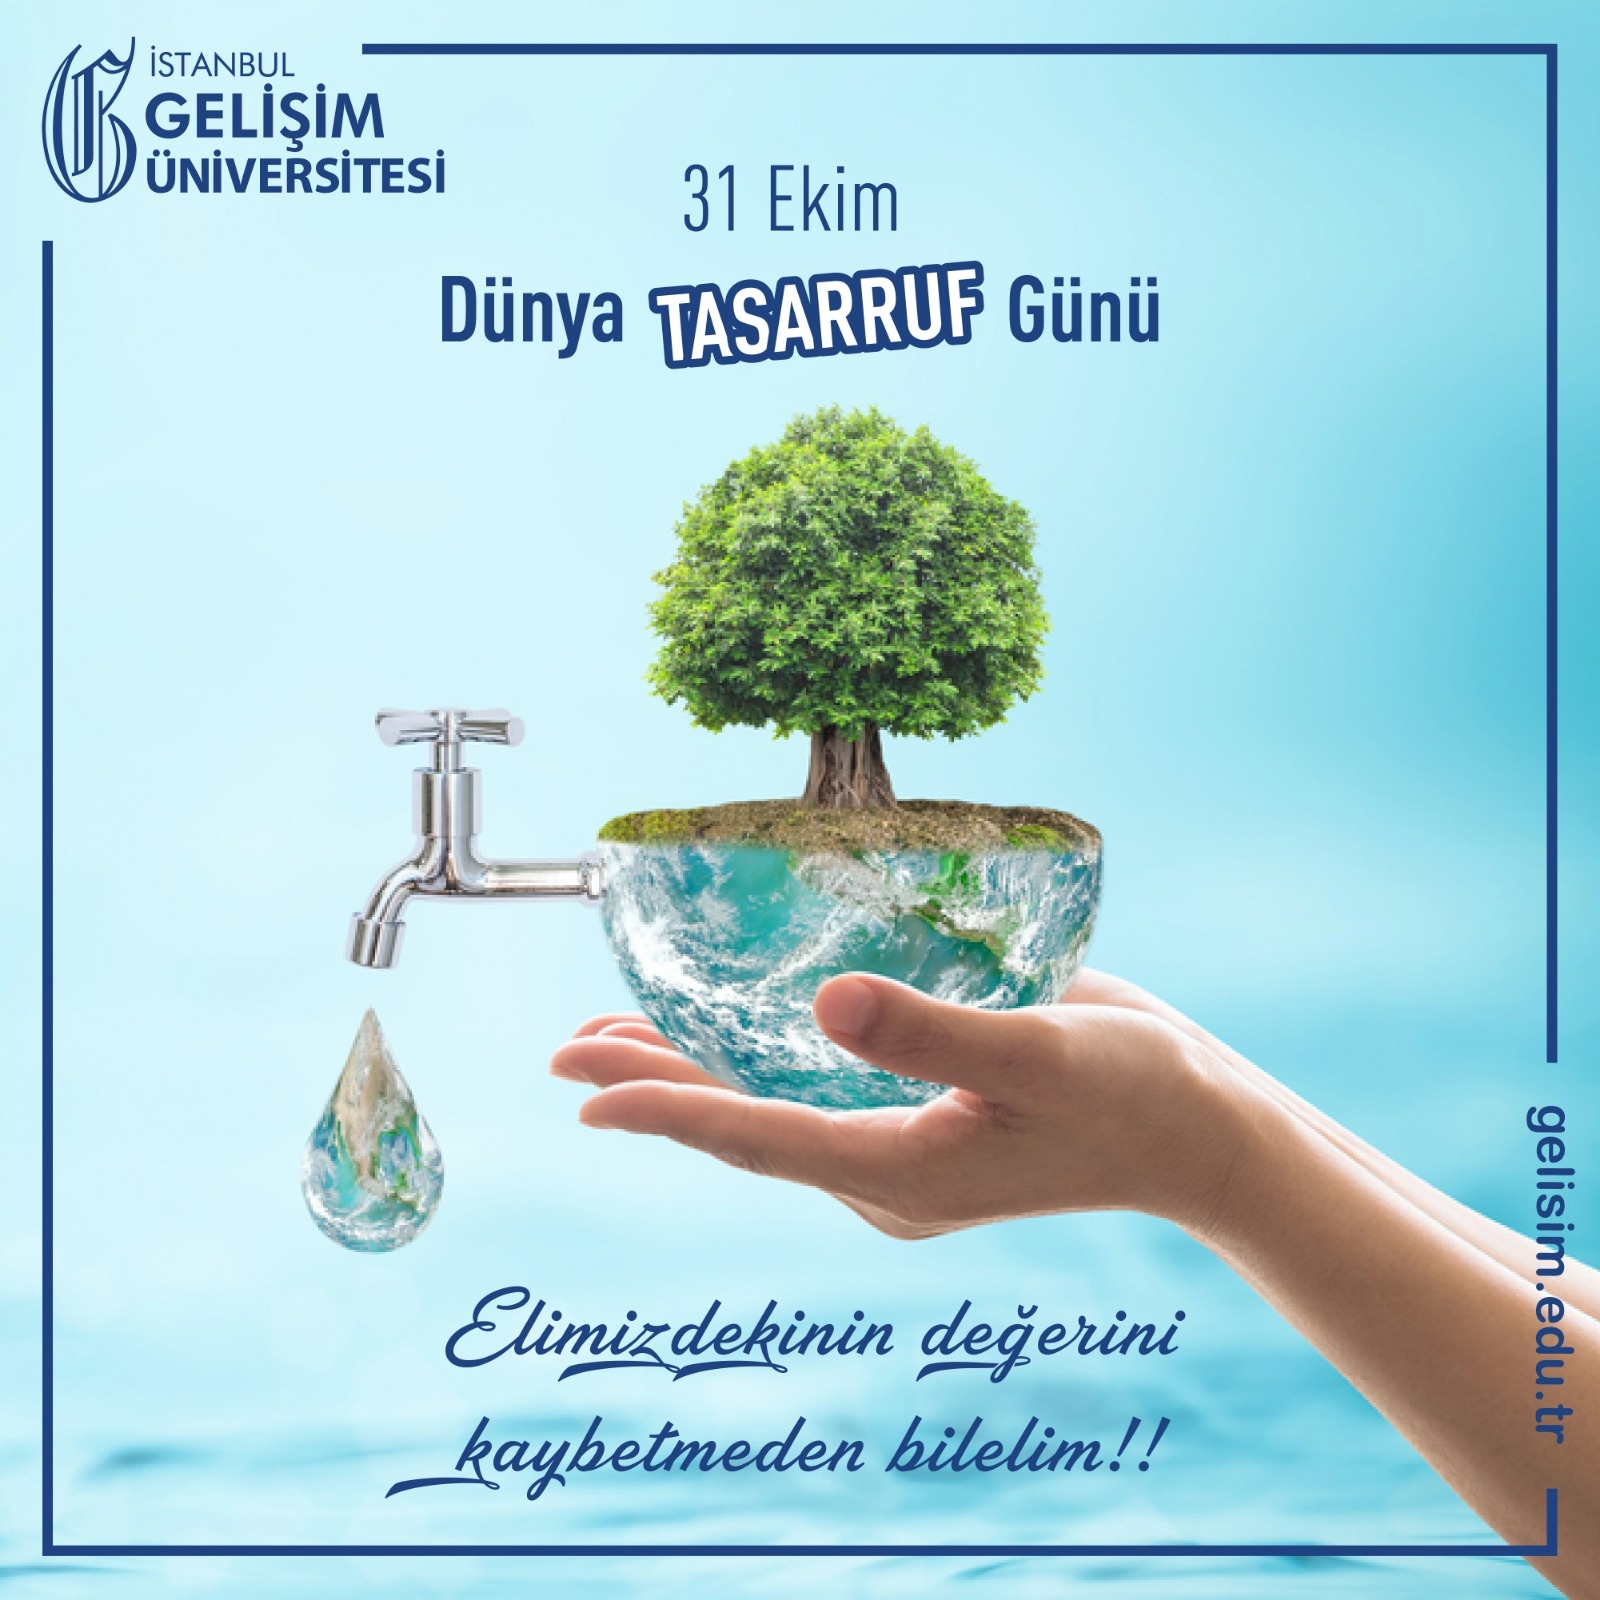 Dünya Tasarruf Günü - İstanbul Gelişim Üniversitesi